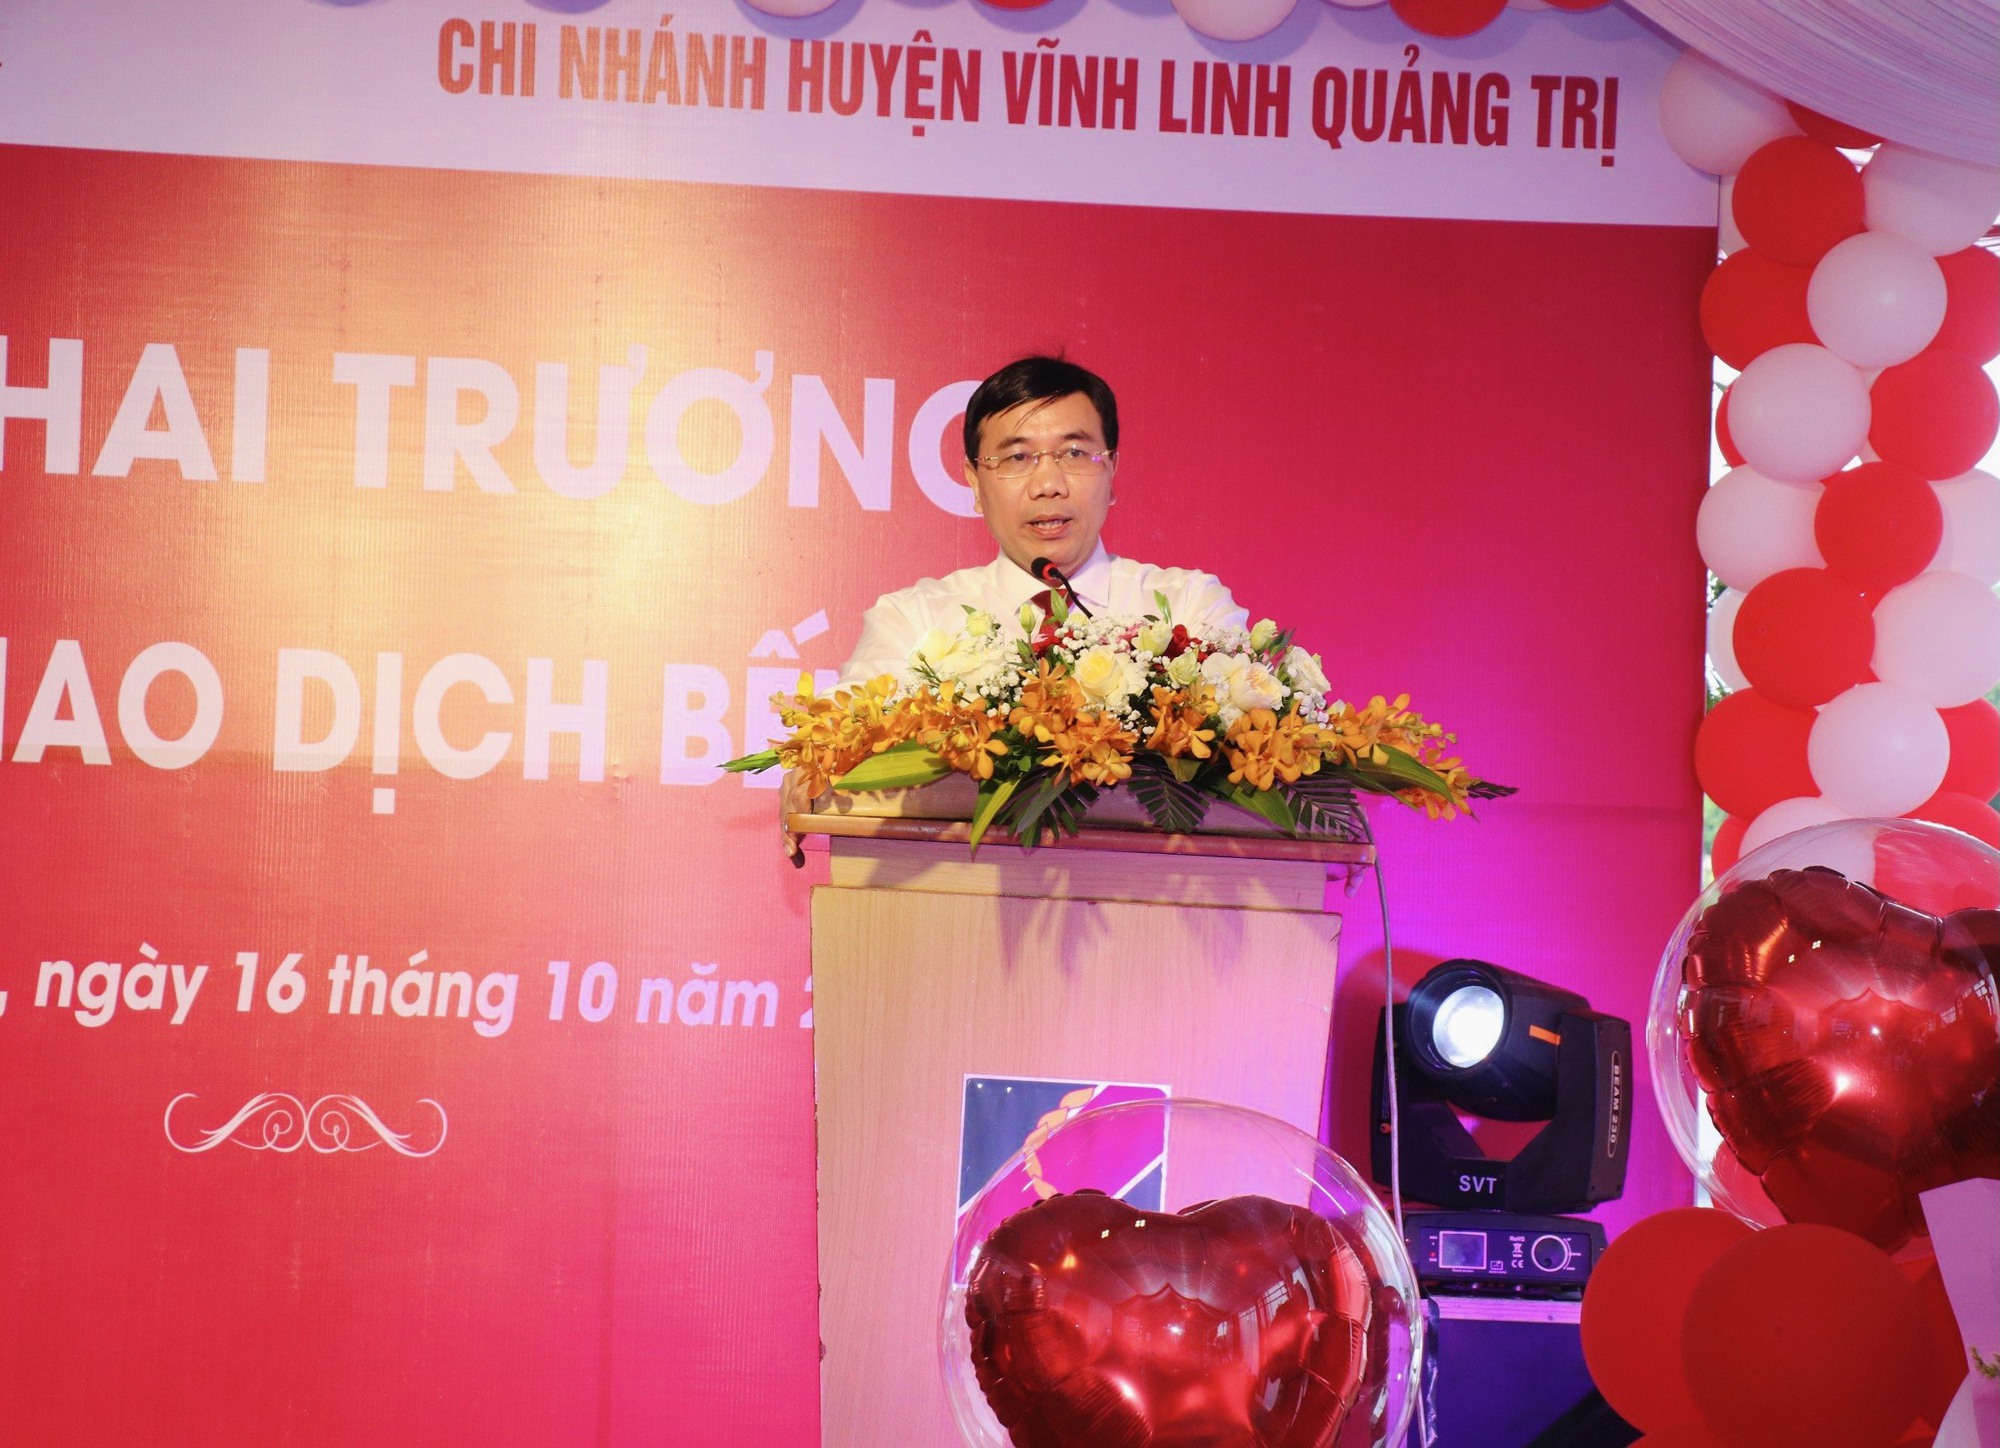 Quảng Trị: Agribank khai trương Phòng giao dịch Bến Quan – Chi nhánh huyện Vĩnh Linh - Ảnh 1.